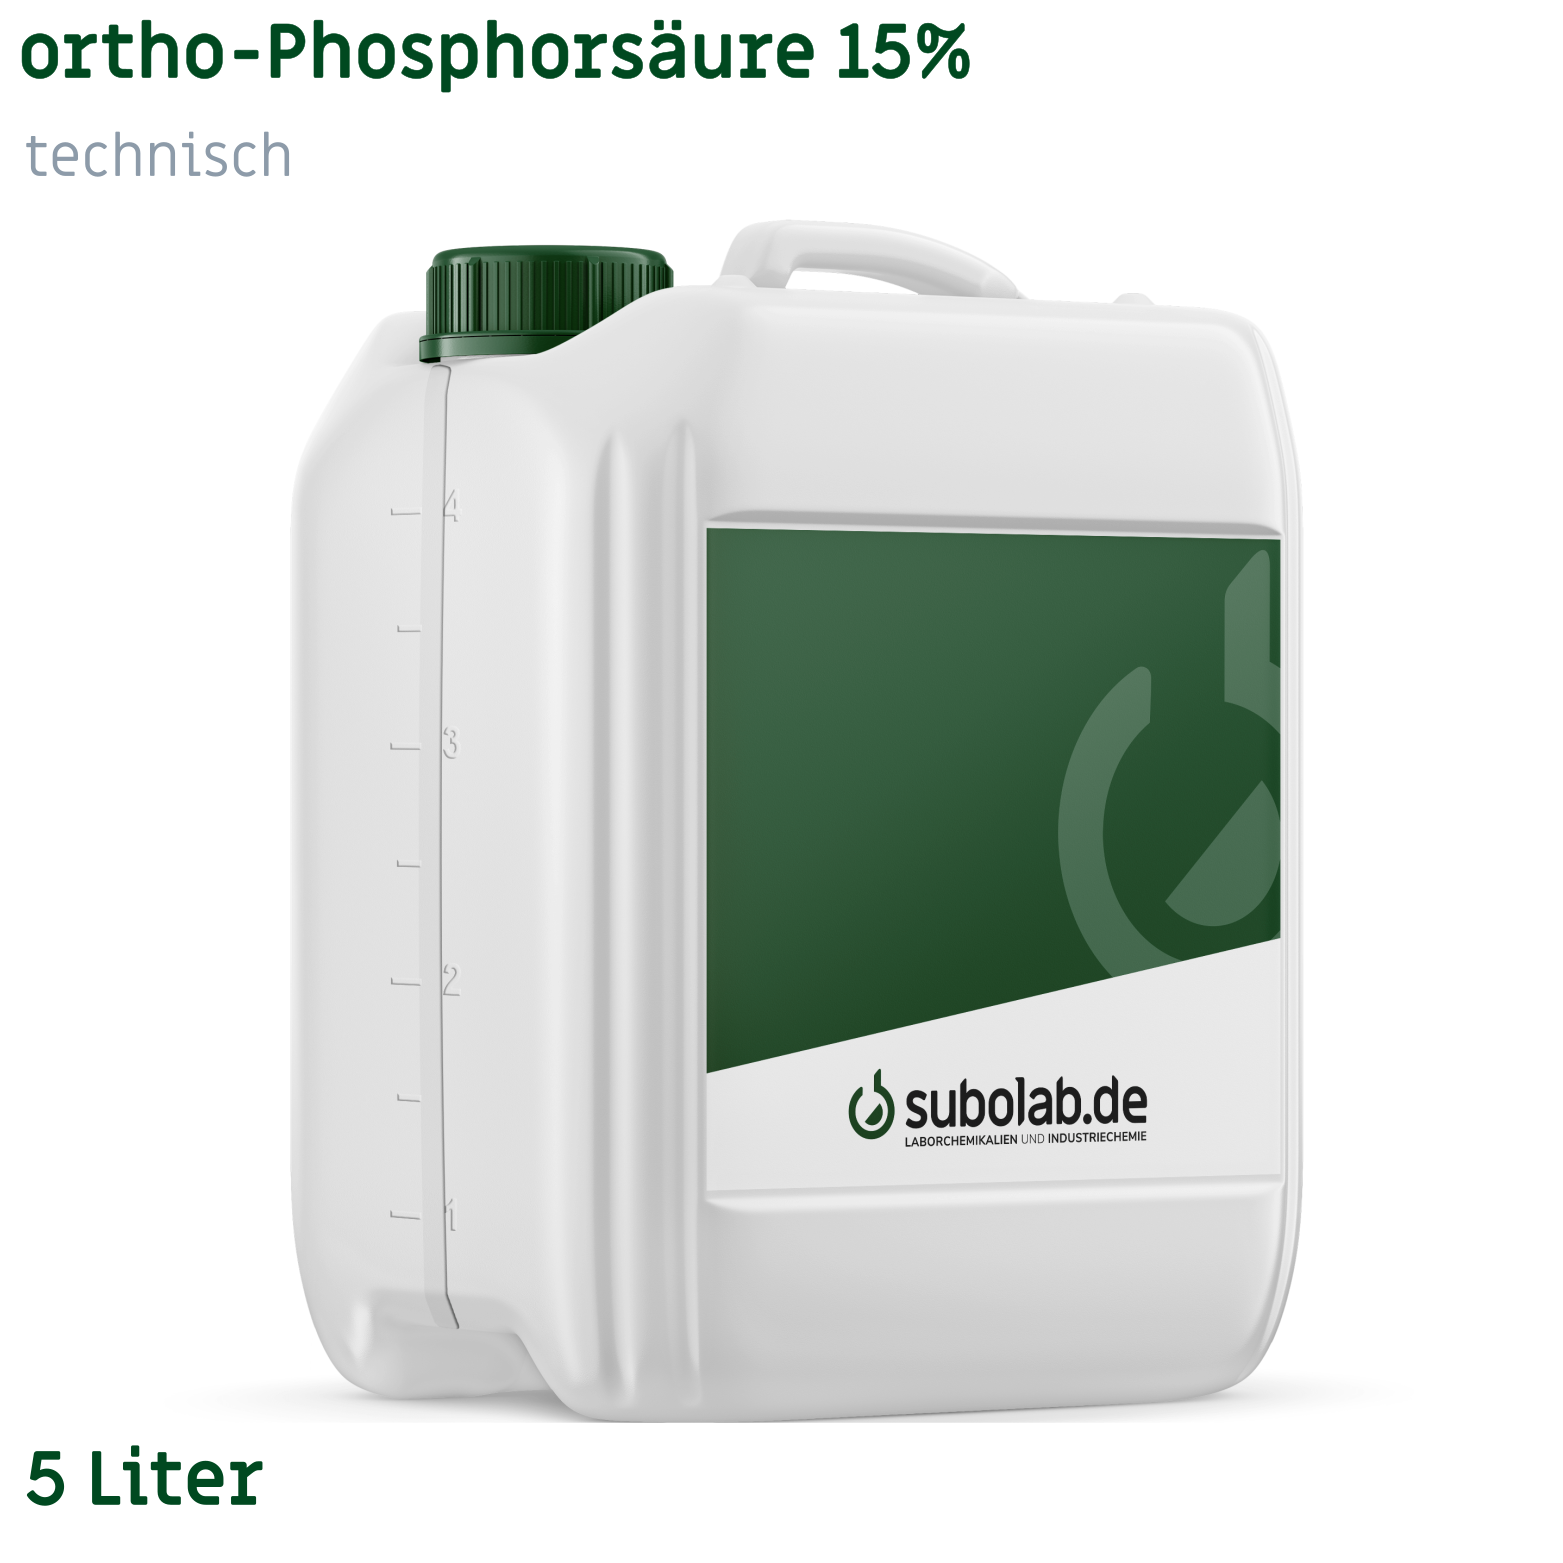 Bild von ortho-Phosphorsäure 15% technisch (5 Liter)